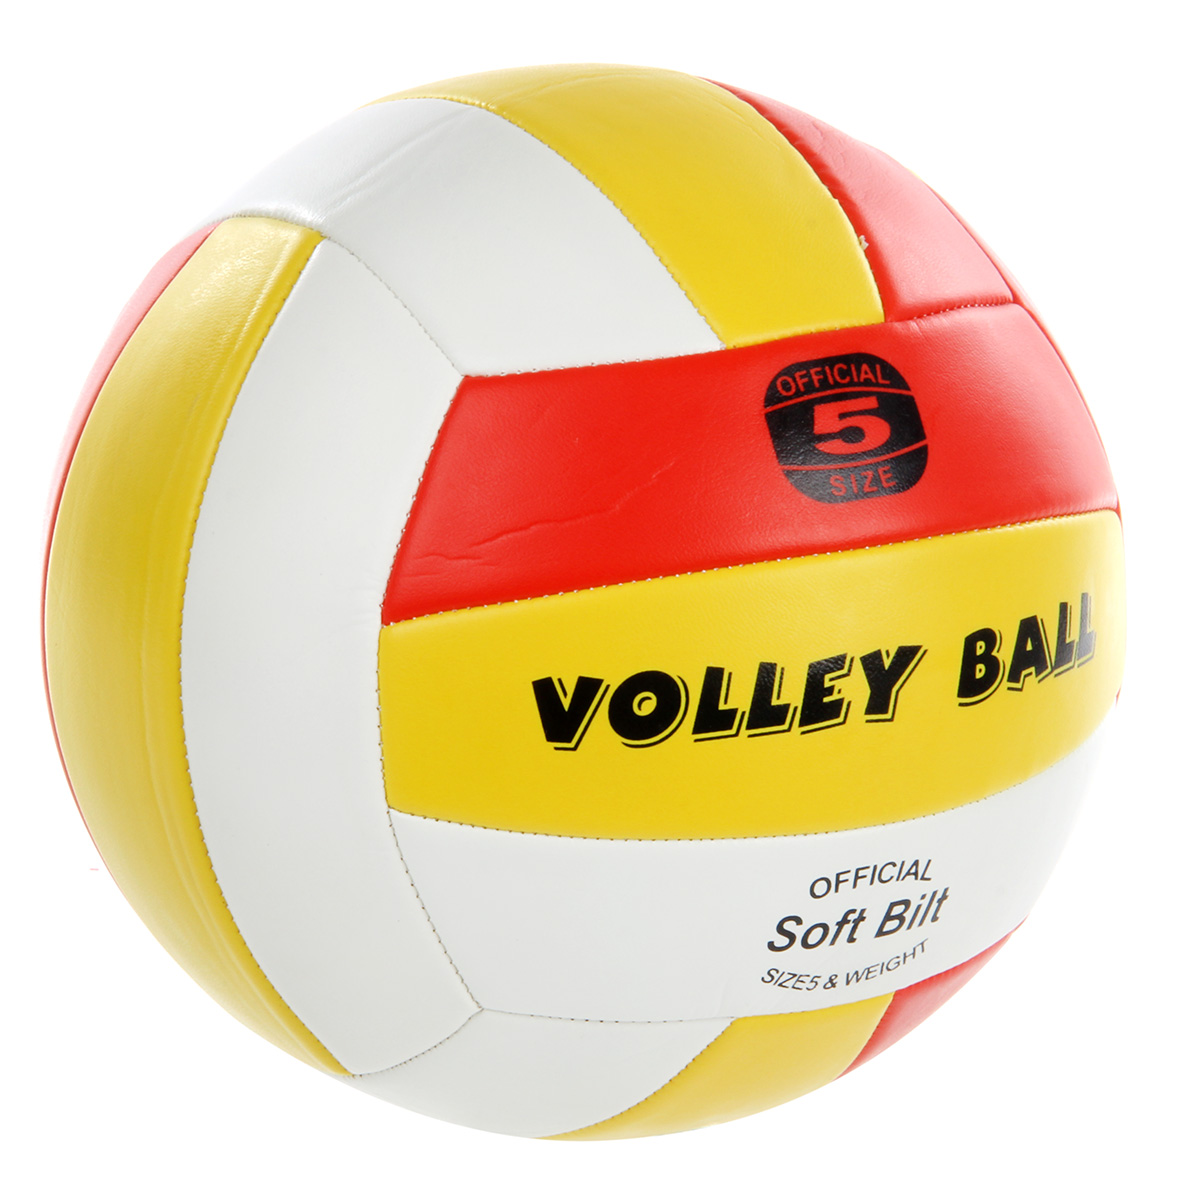 Мяч Veld Co волейбольный 21 см. - фото 1